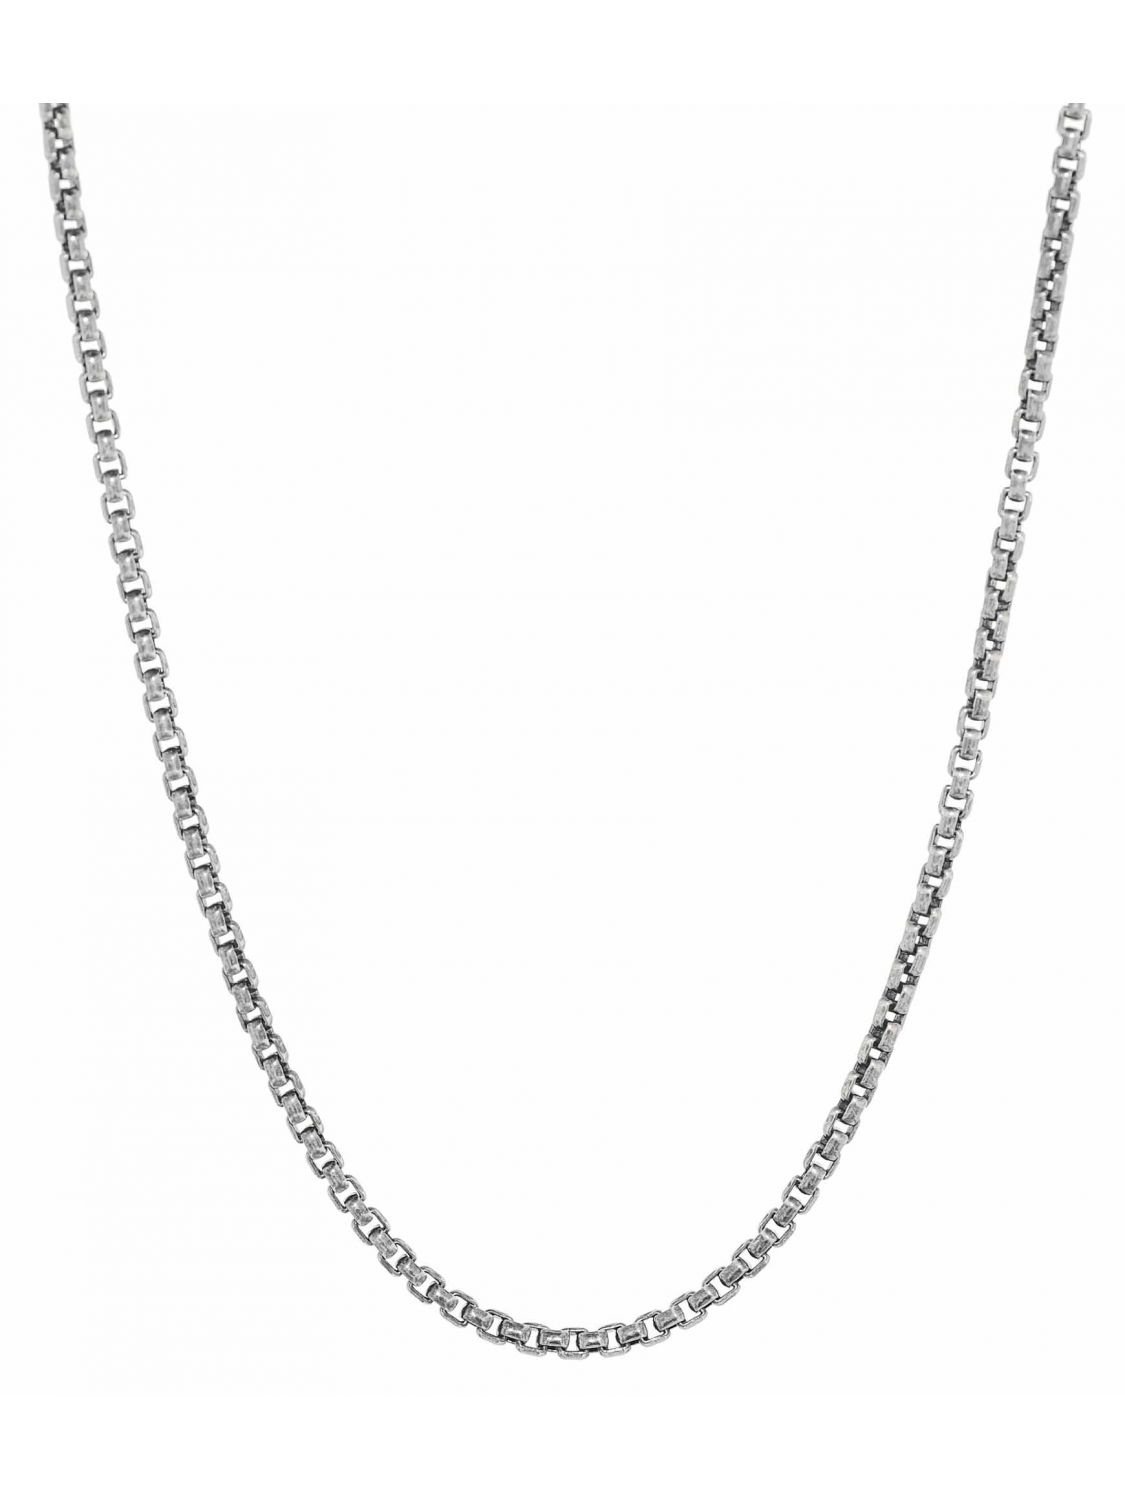 Thomas Sabo Men Silver Chain Necklace KE1108-001-12-L80 